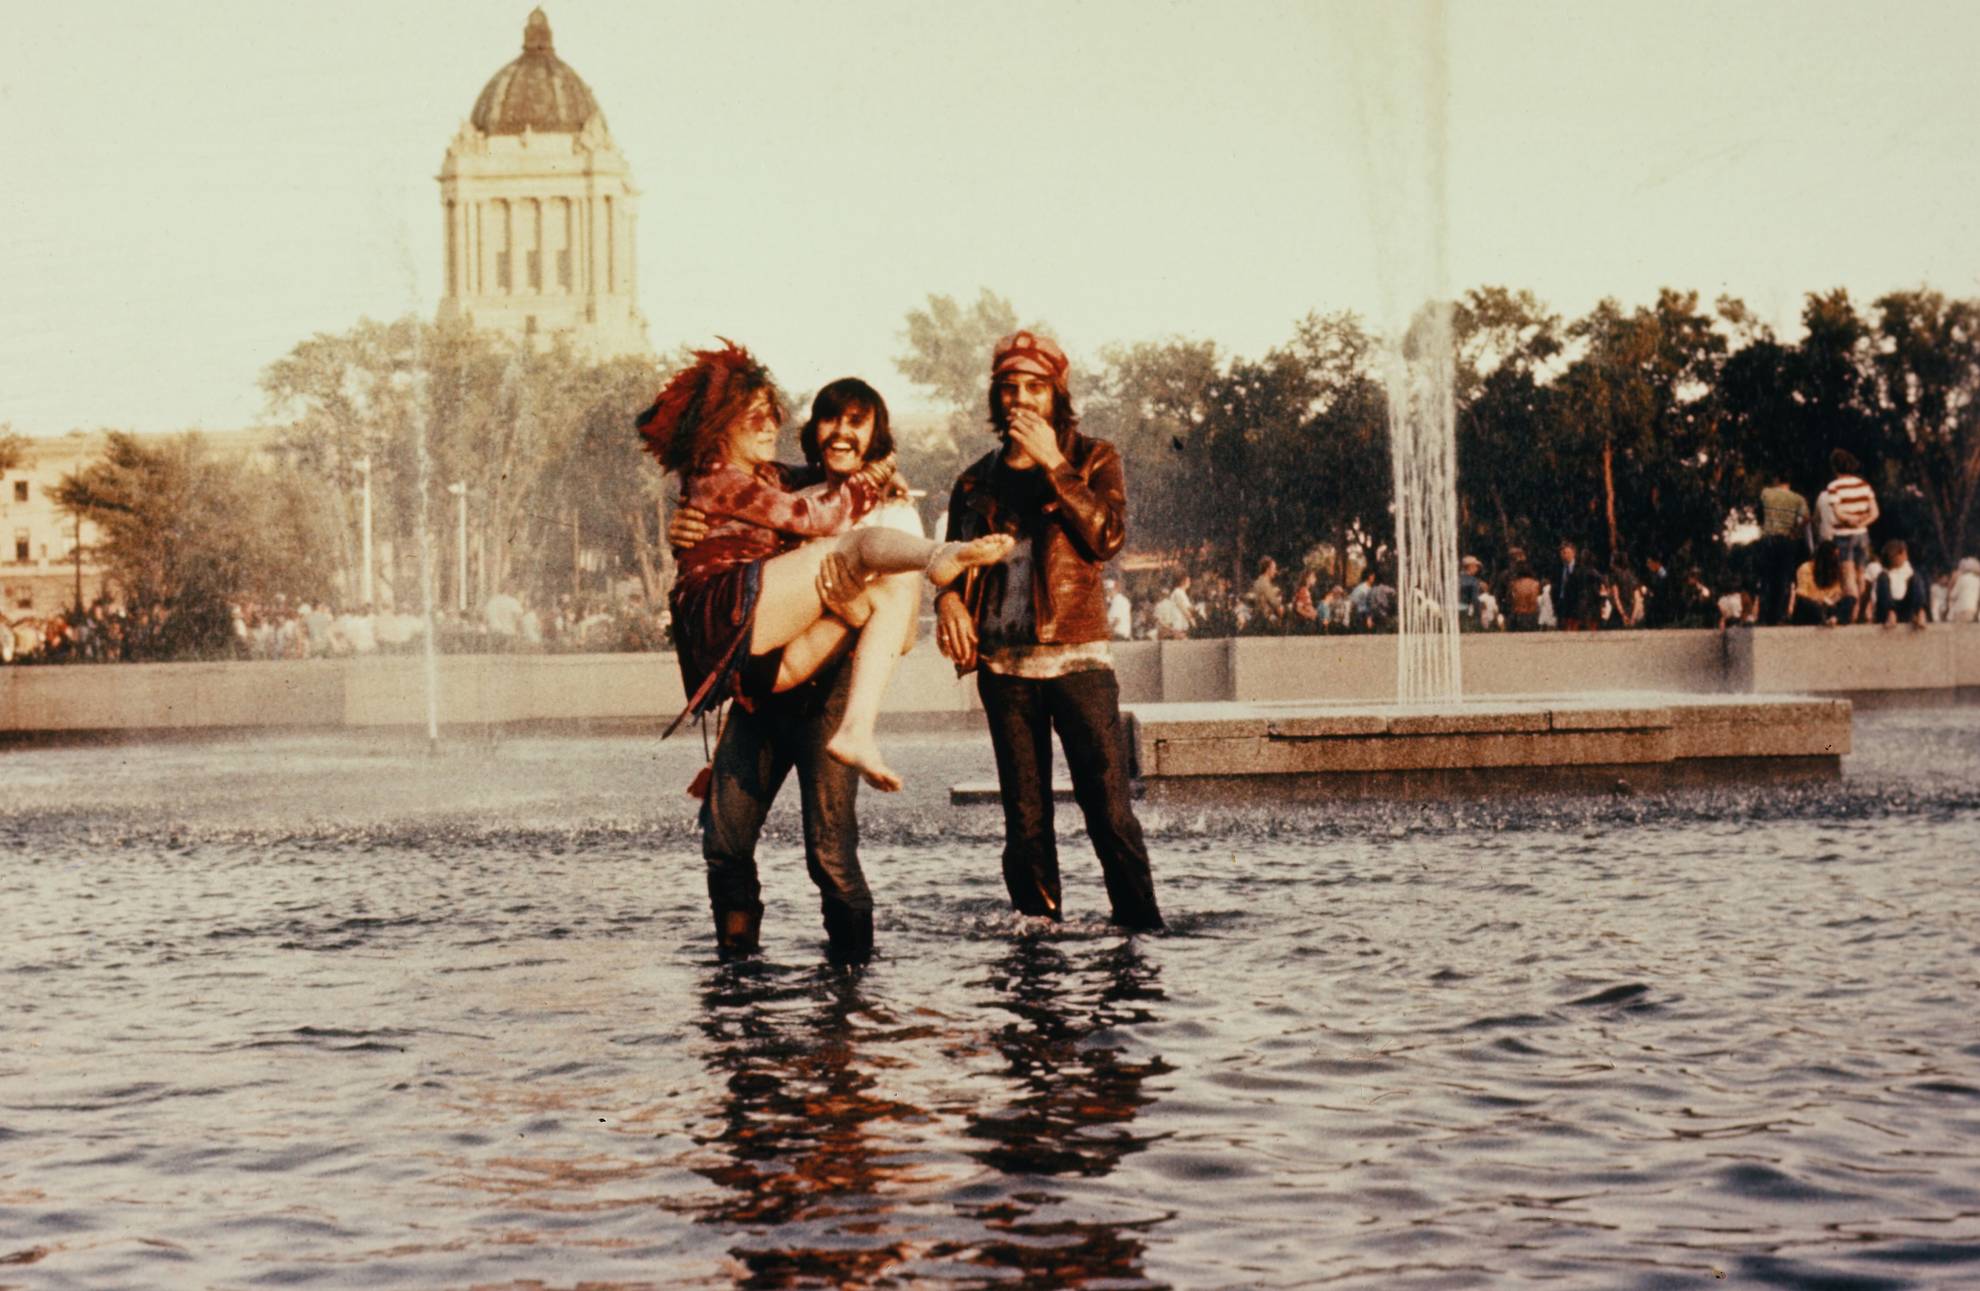 Janis Joplin being carried by a friend in a water fountain in 1970